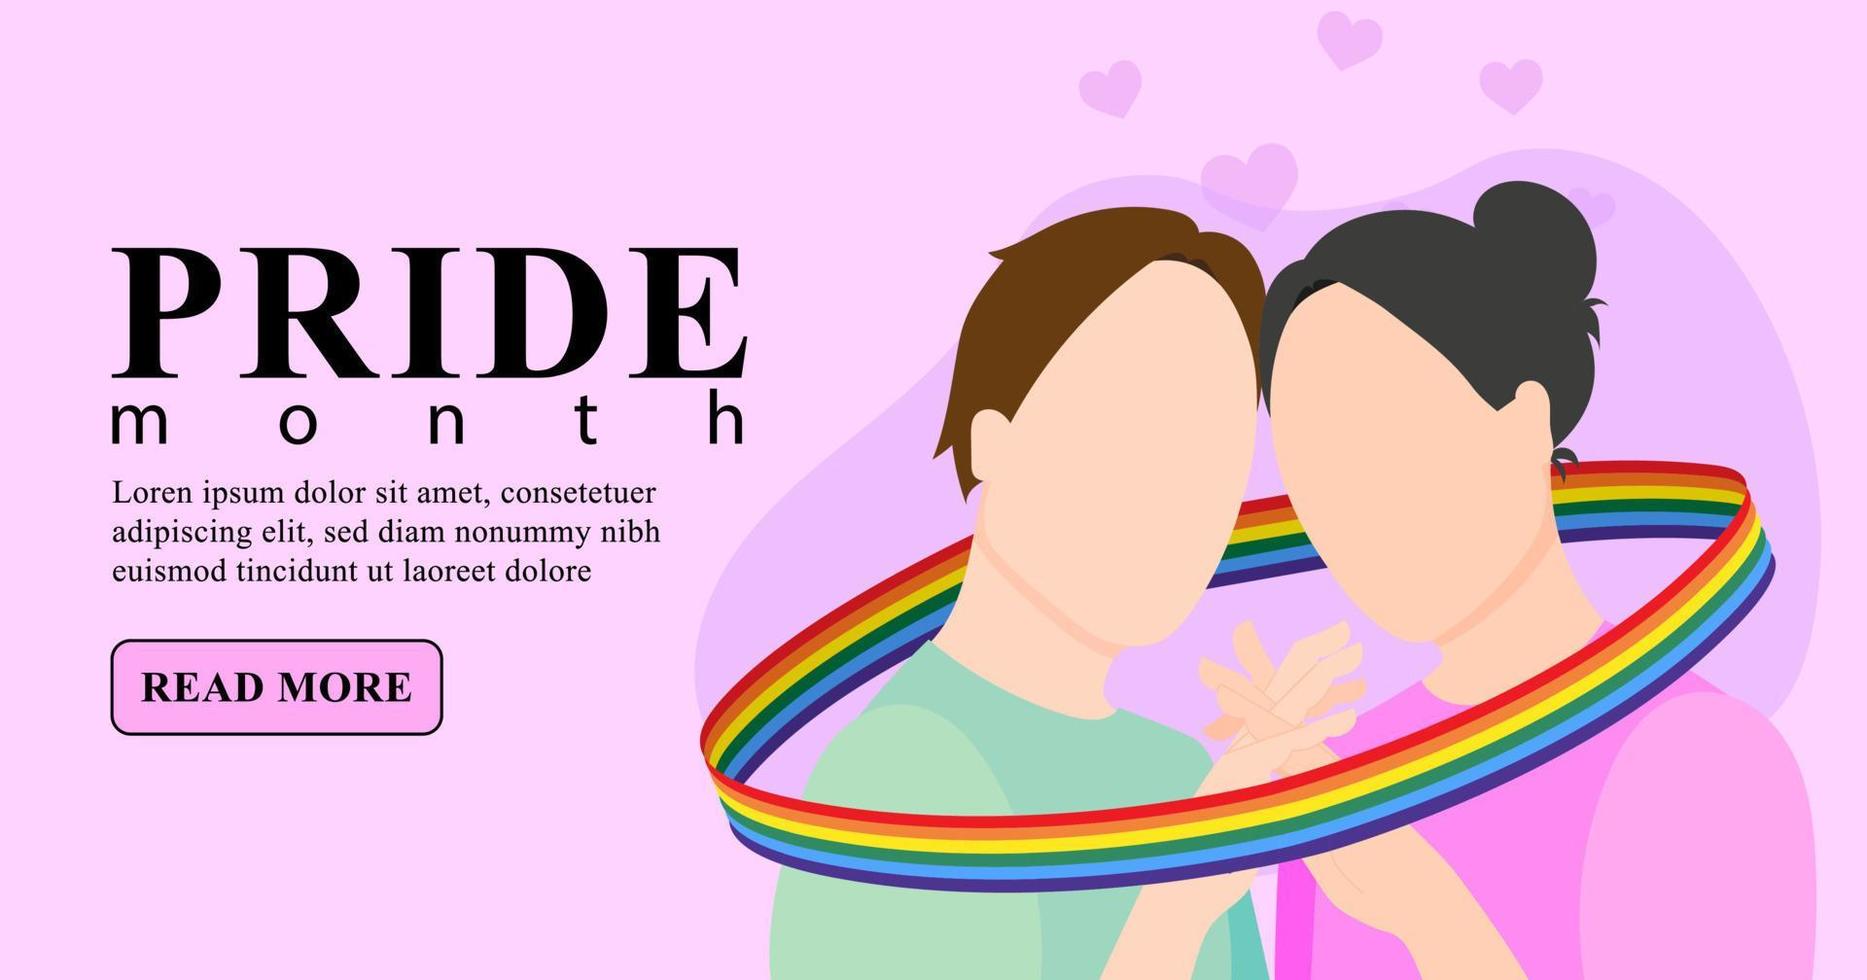 una pareja gay enamorada tiene las manos envueltas en una cinta con una bandera lgbt. ilustración vectorial plana. plantilla de banner lgbtq sobre fondo rosa. vector